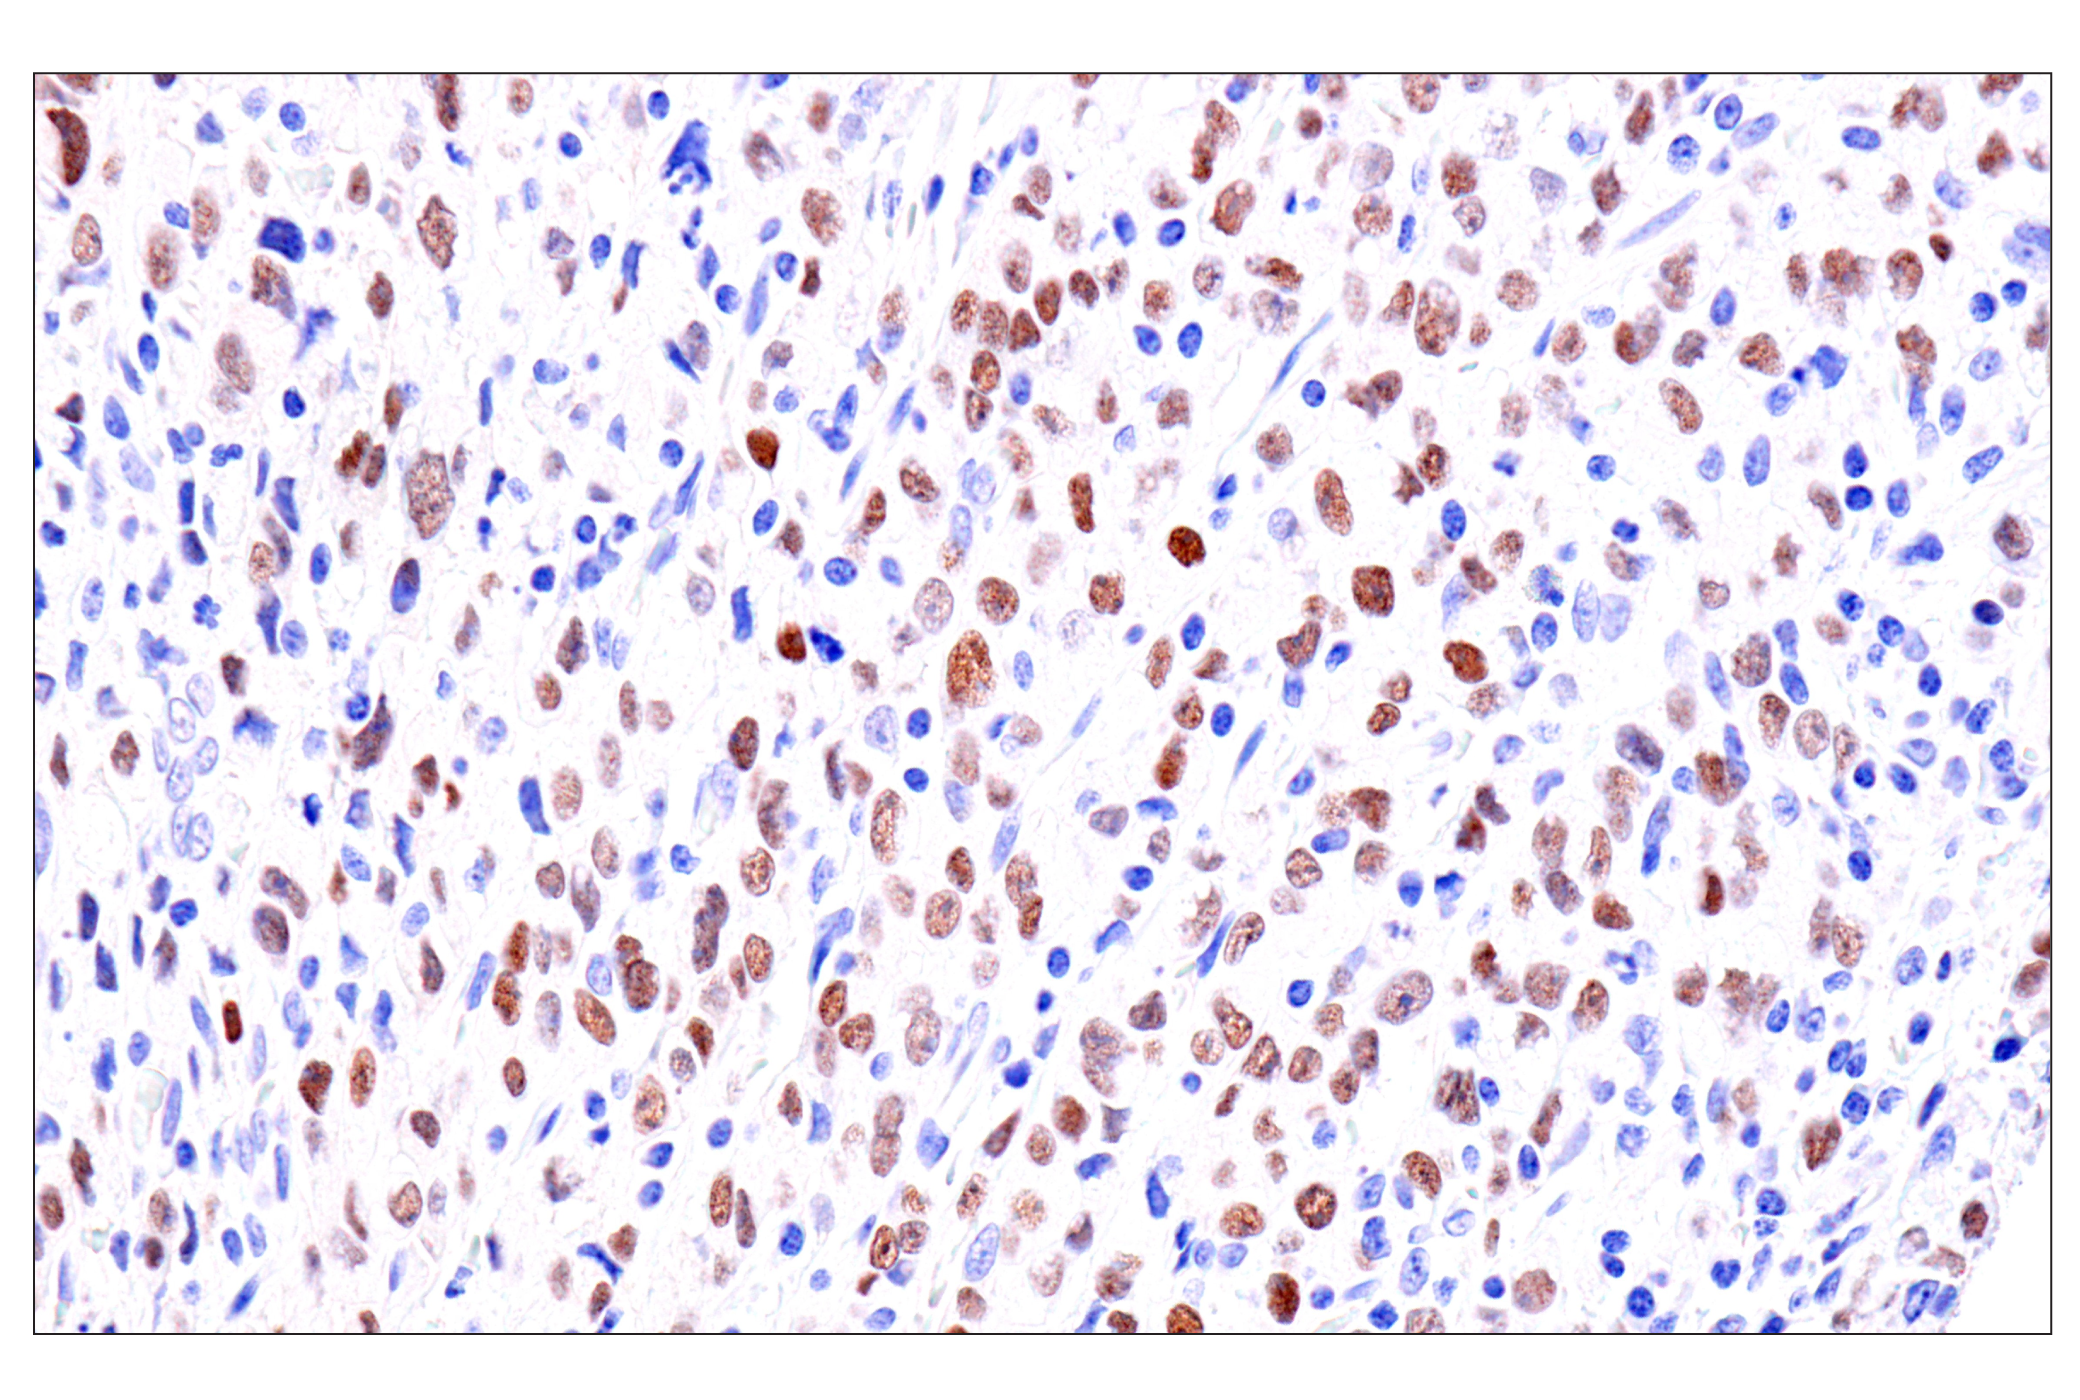  Image 28: GATA Transcription Factor Antibody Sampler Kit